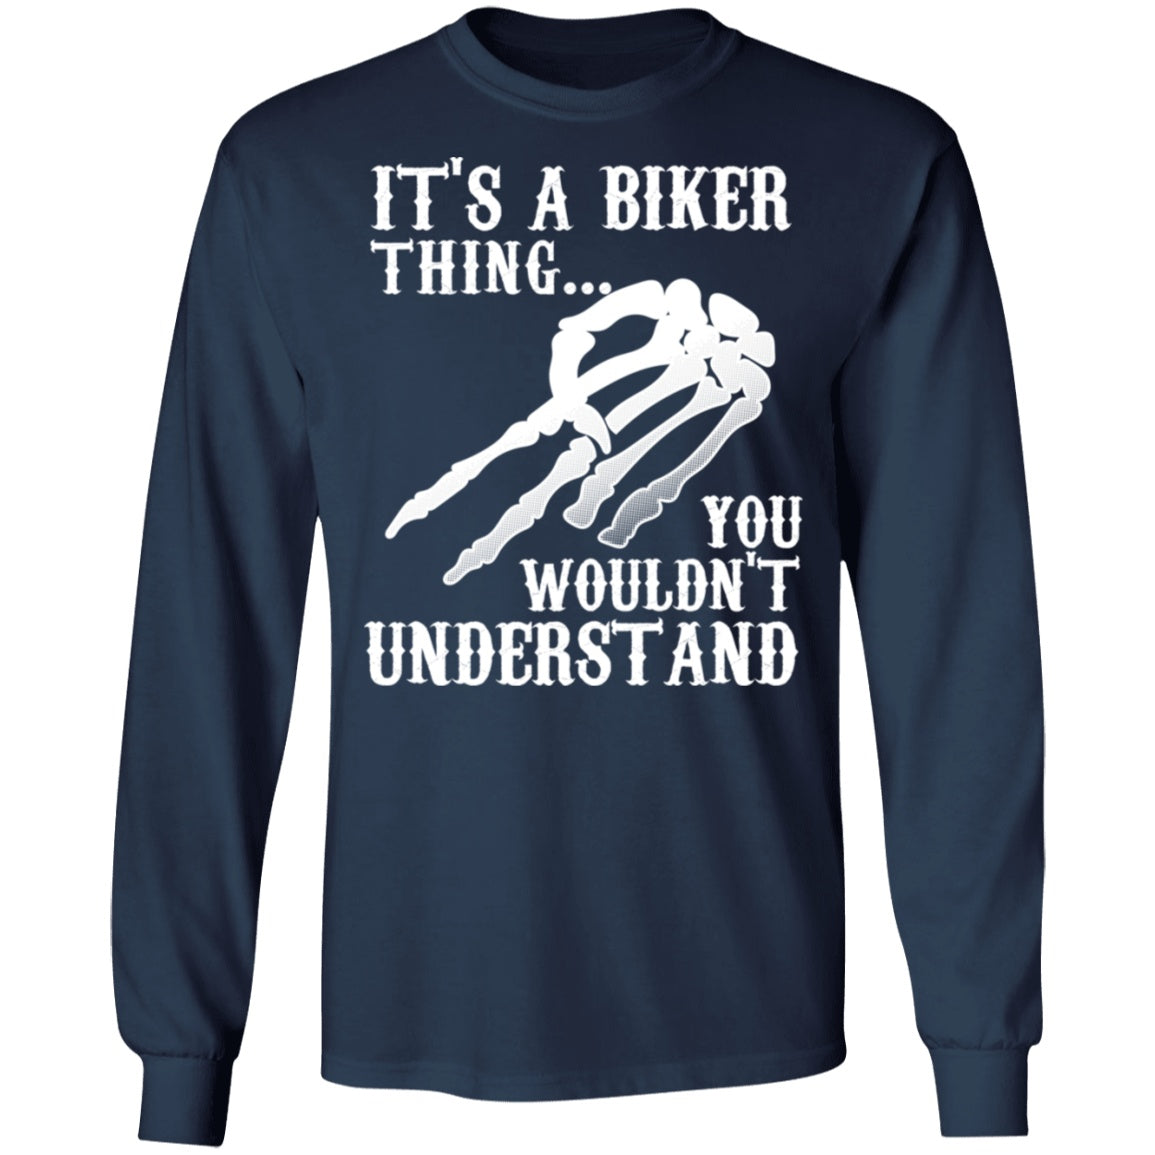 Respect - It's A Biker Thing Shirt